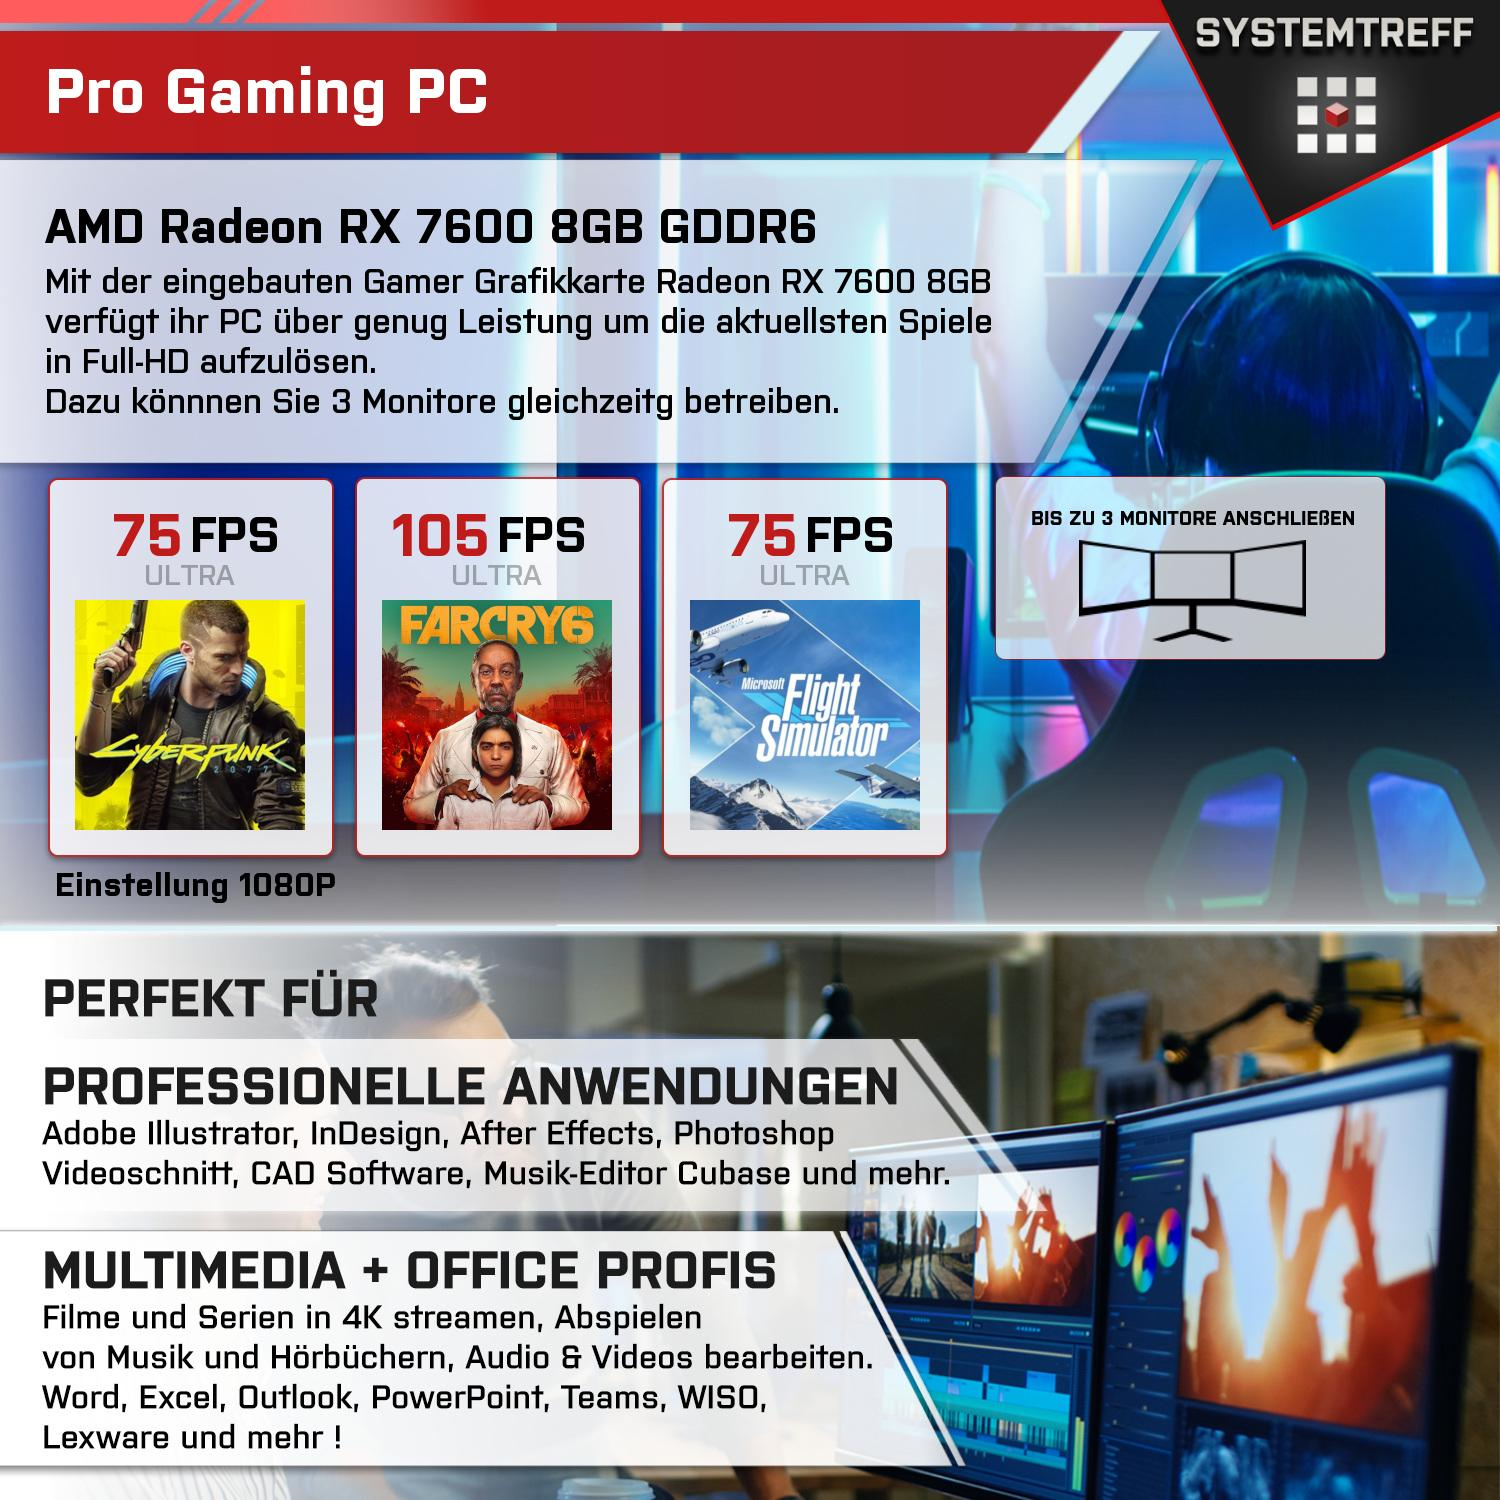 SYSTEMTREFF Gaming Komplett RAM, Prozessor, Ryzen Radeon mit mSSD, 8 AMD 7600X 1000 32 5 7600 GDDR6, GB RX 8GB Komplett GB AMD GB PC 7600X